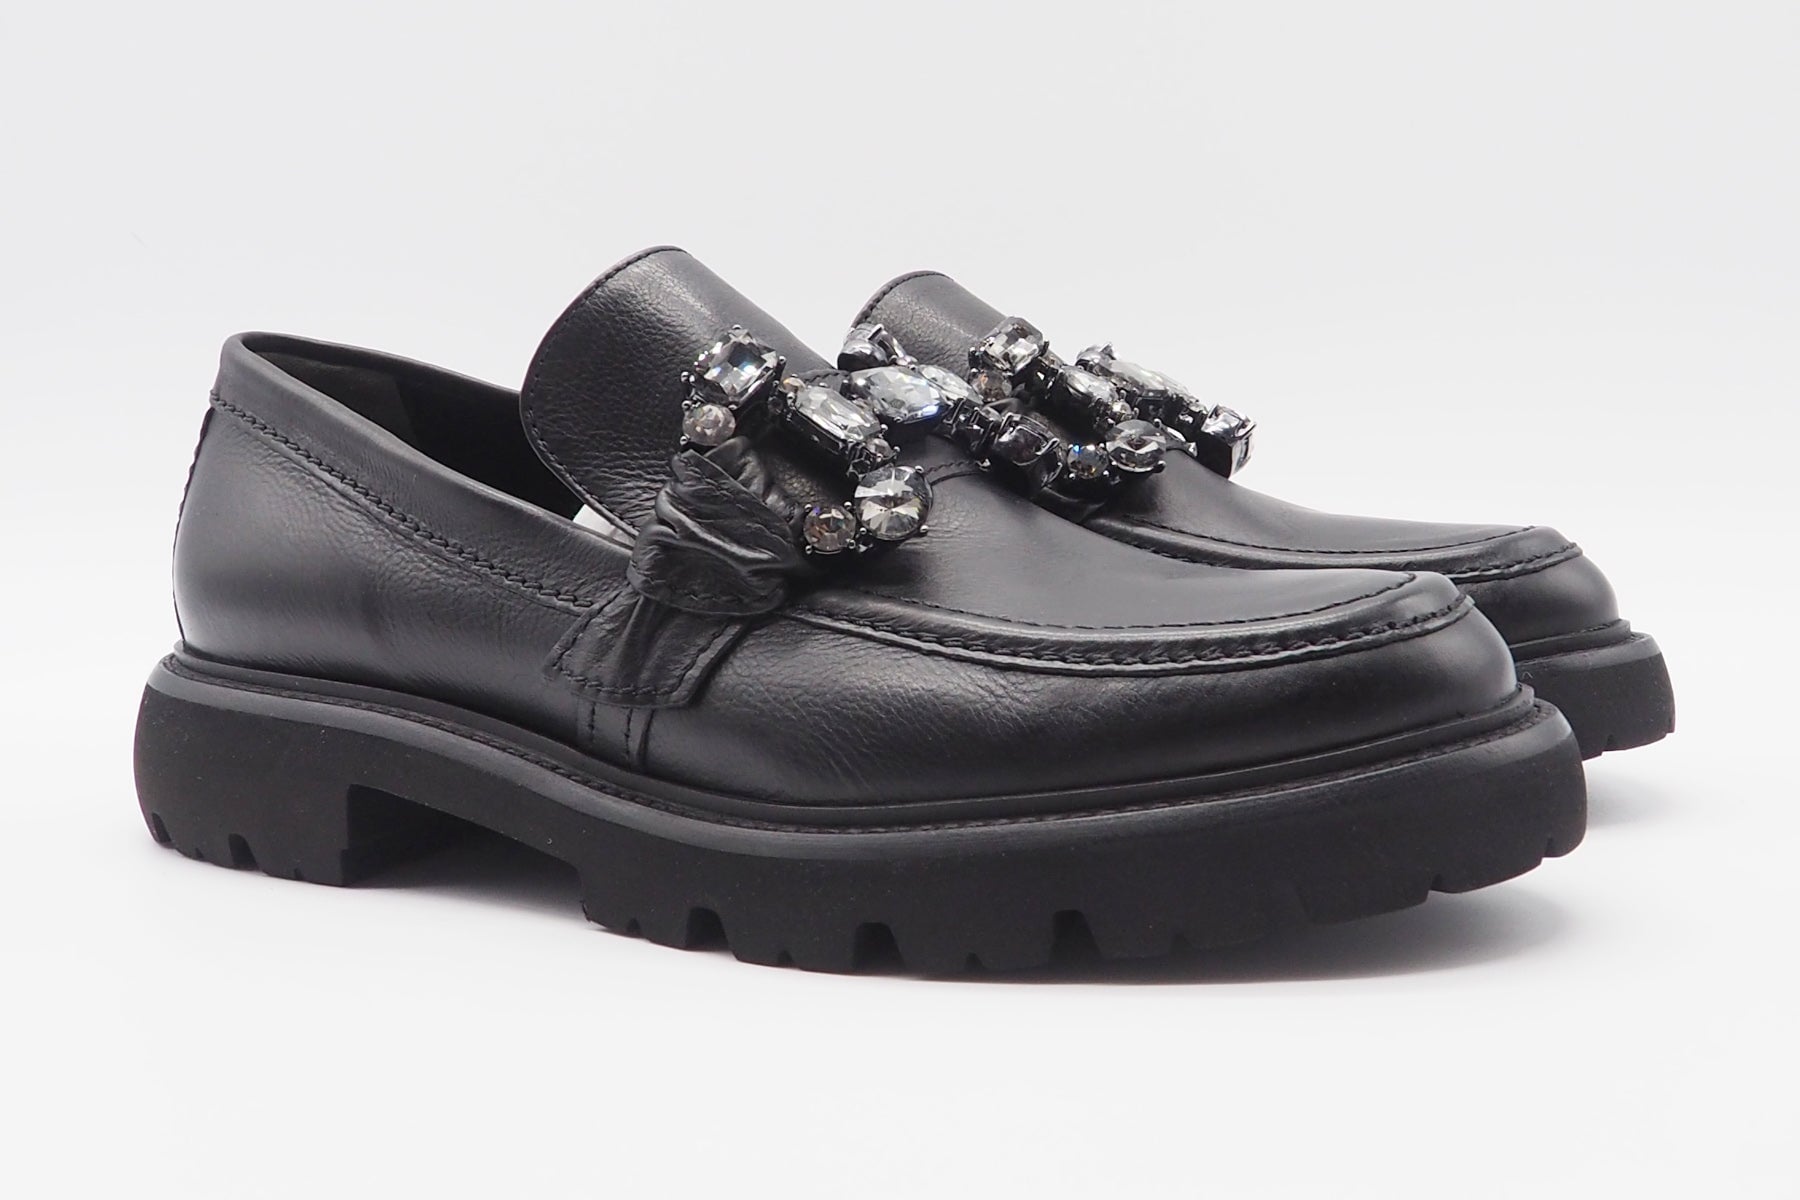 Damen Loafer aus Glattleder in Schwarz mit Kristallapplikation - Print- Absatz 3,5cm Damen Loafers & Schnürer Kennel & Schmenger 